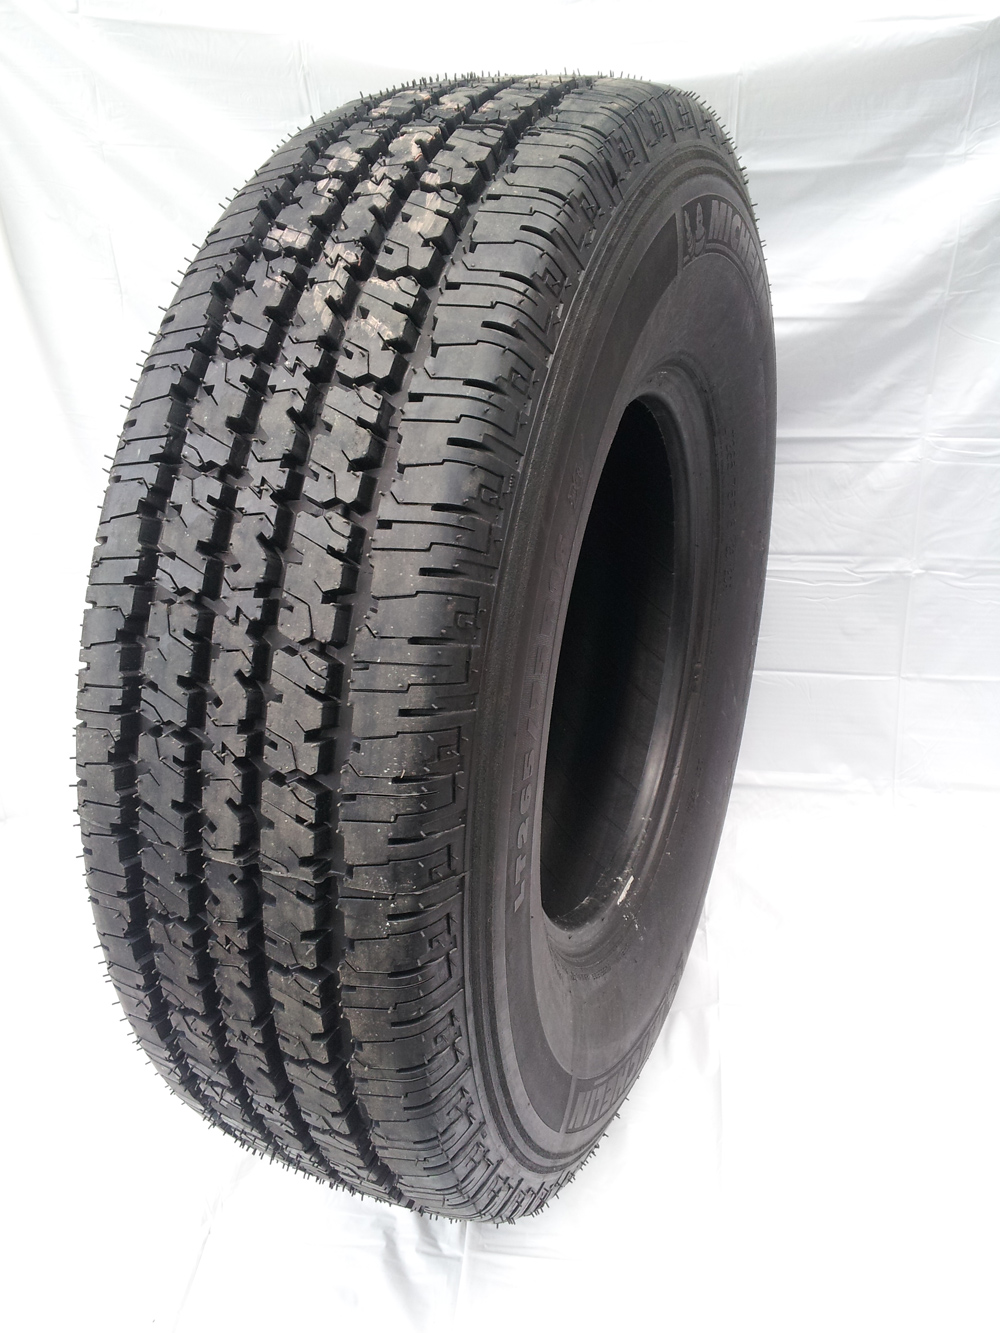 Tire Recappers - LT265/75R16 Retread Proforce Ht